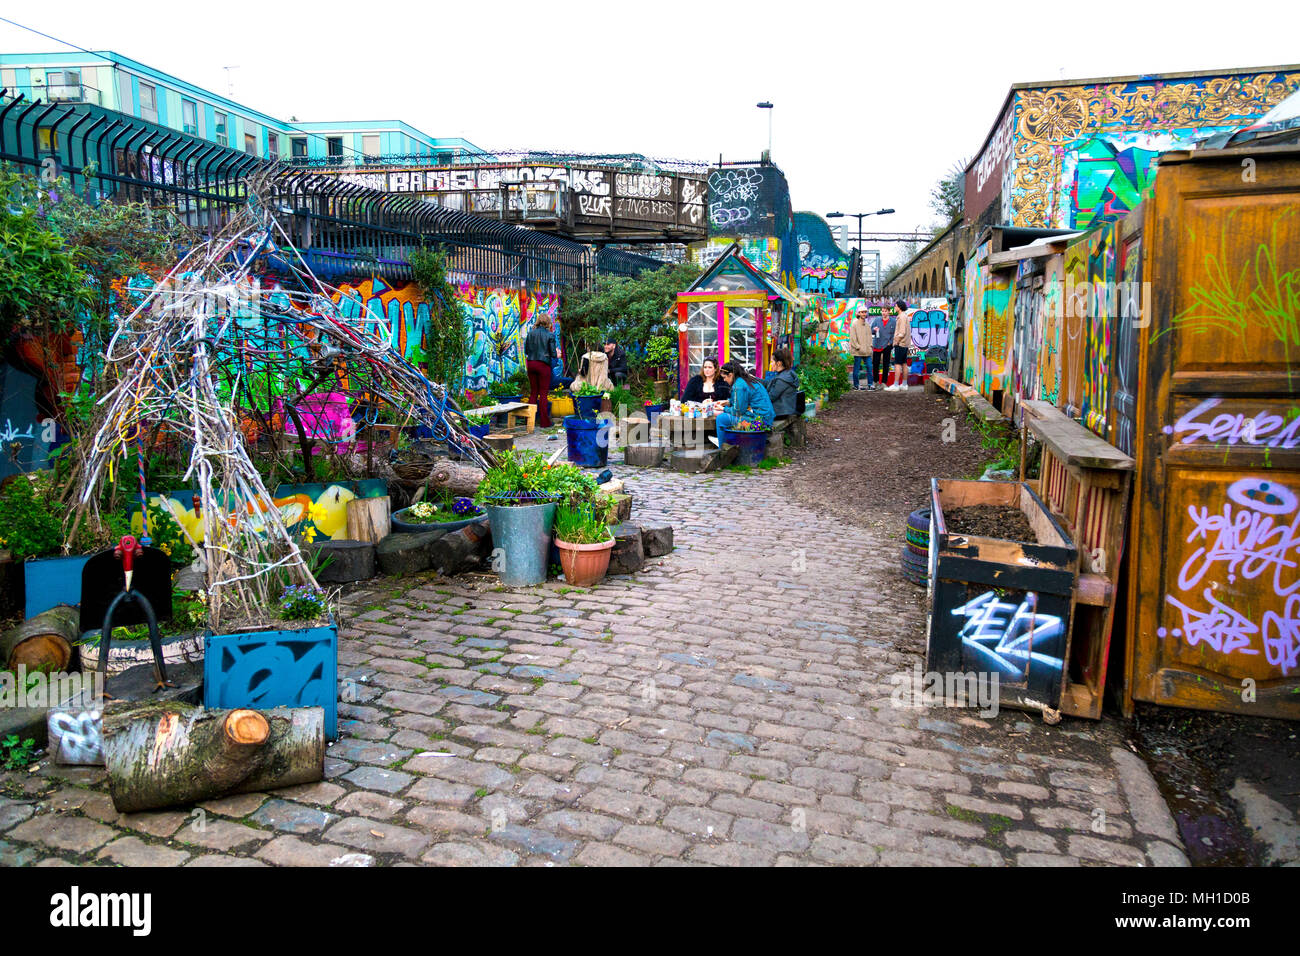 The Nomadic Community Garden off Brick Lane, London, UK Stock Photo